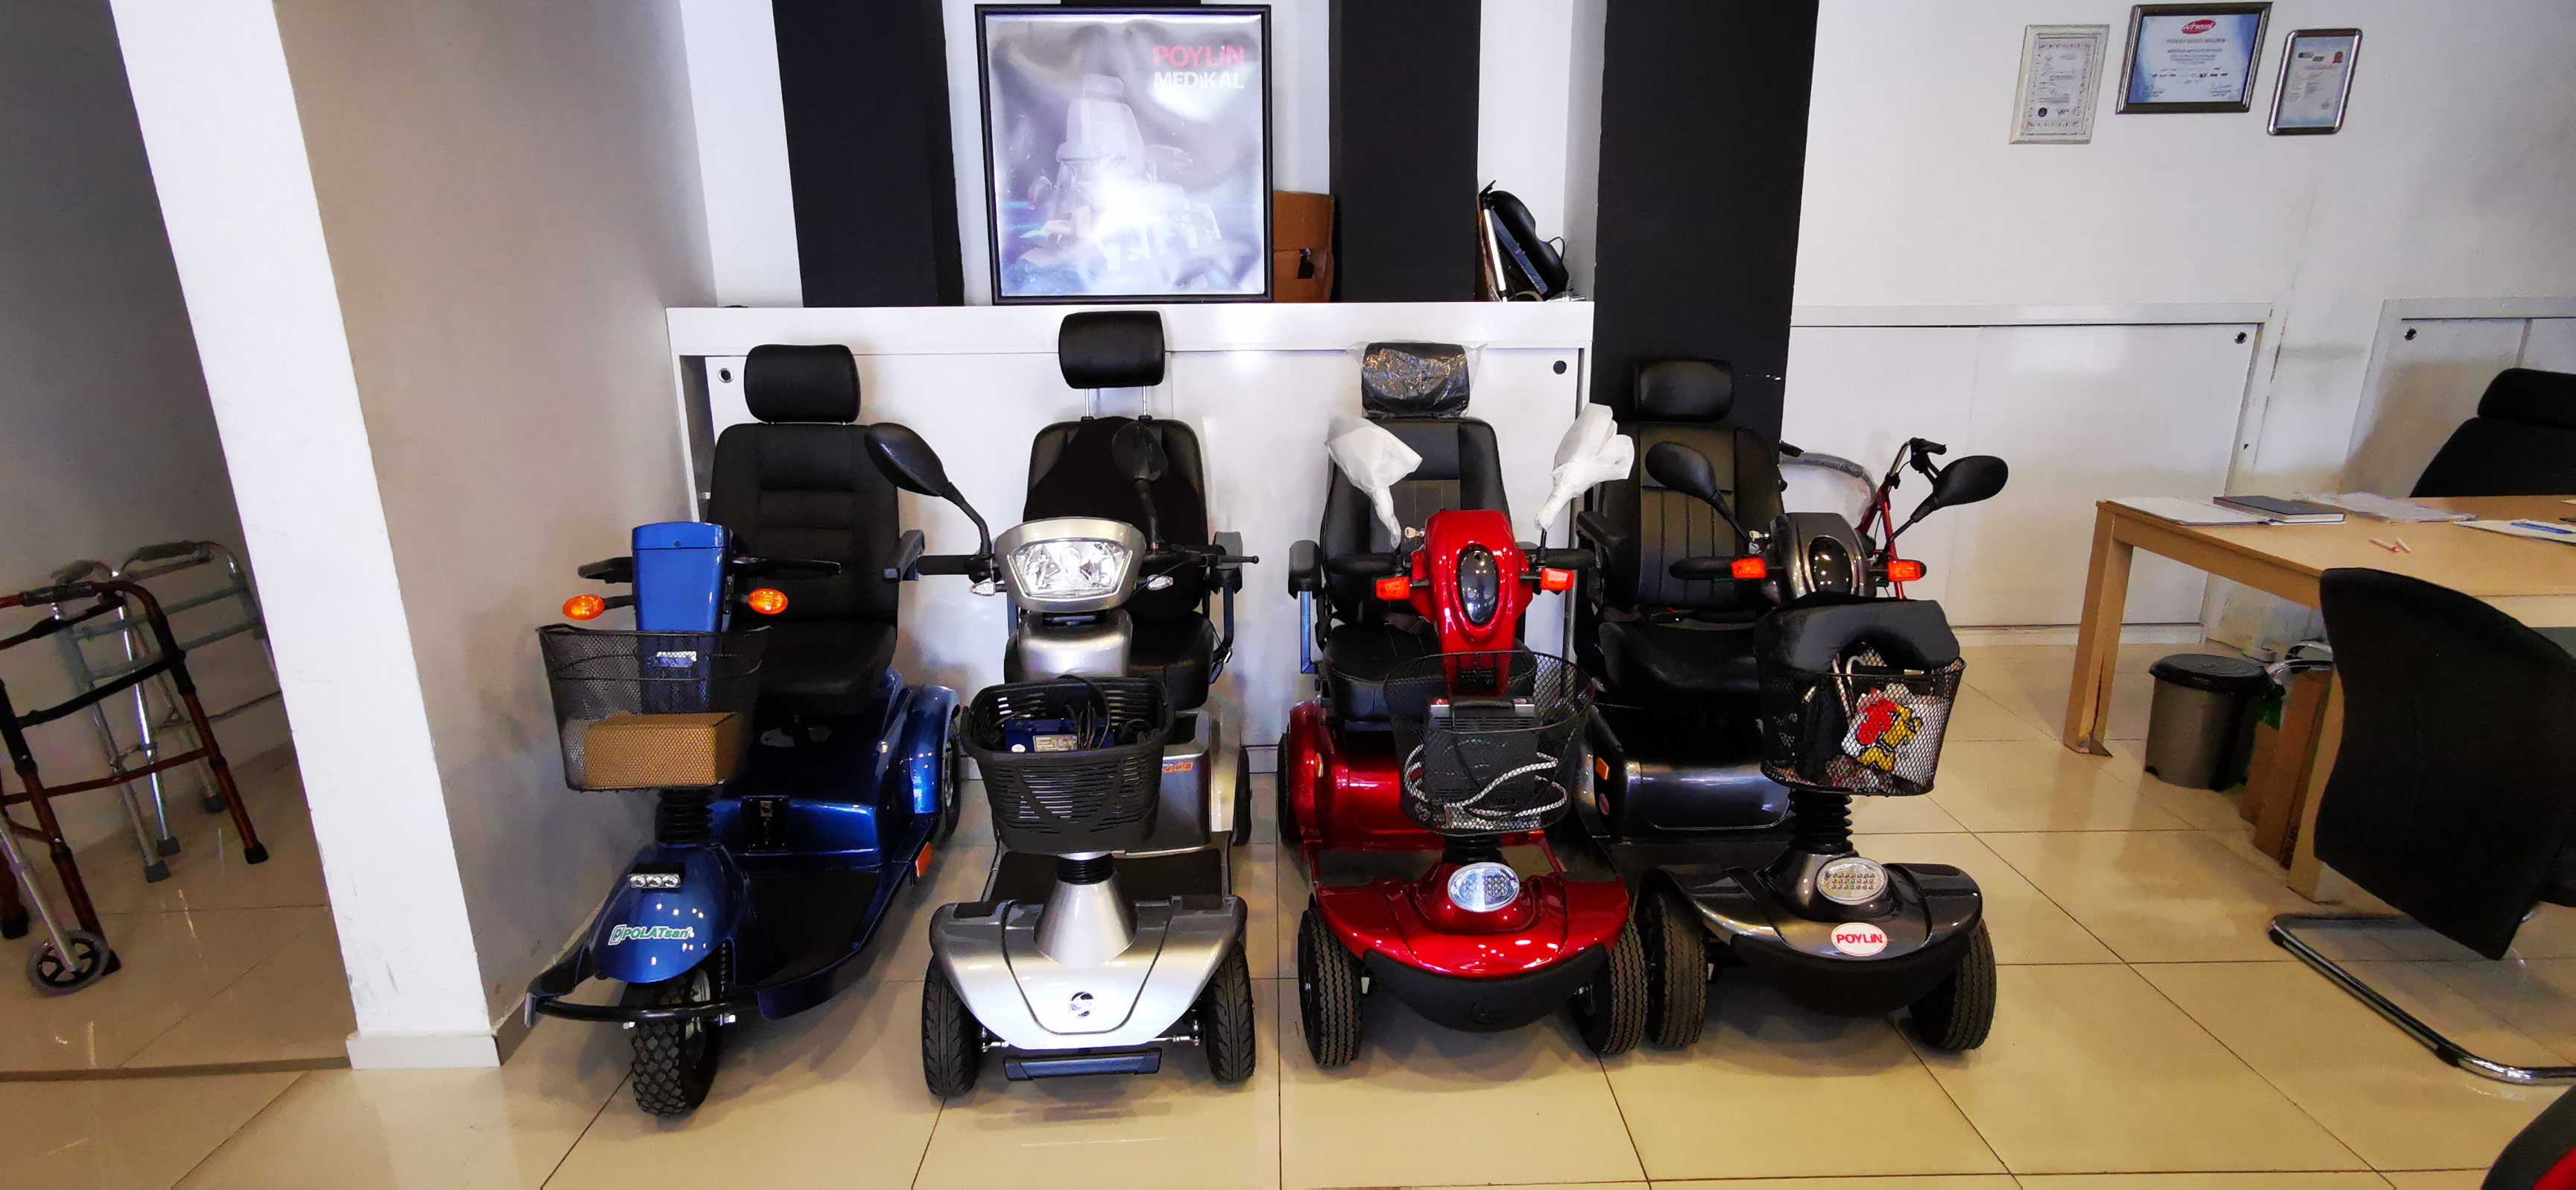 tekerlekli sandalye dünyası satış mağazası